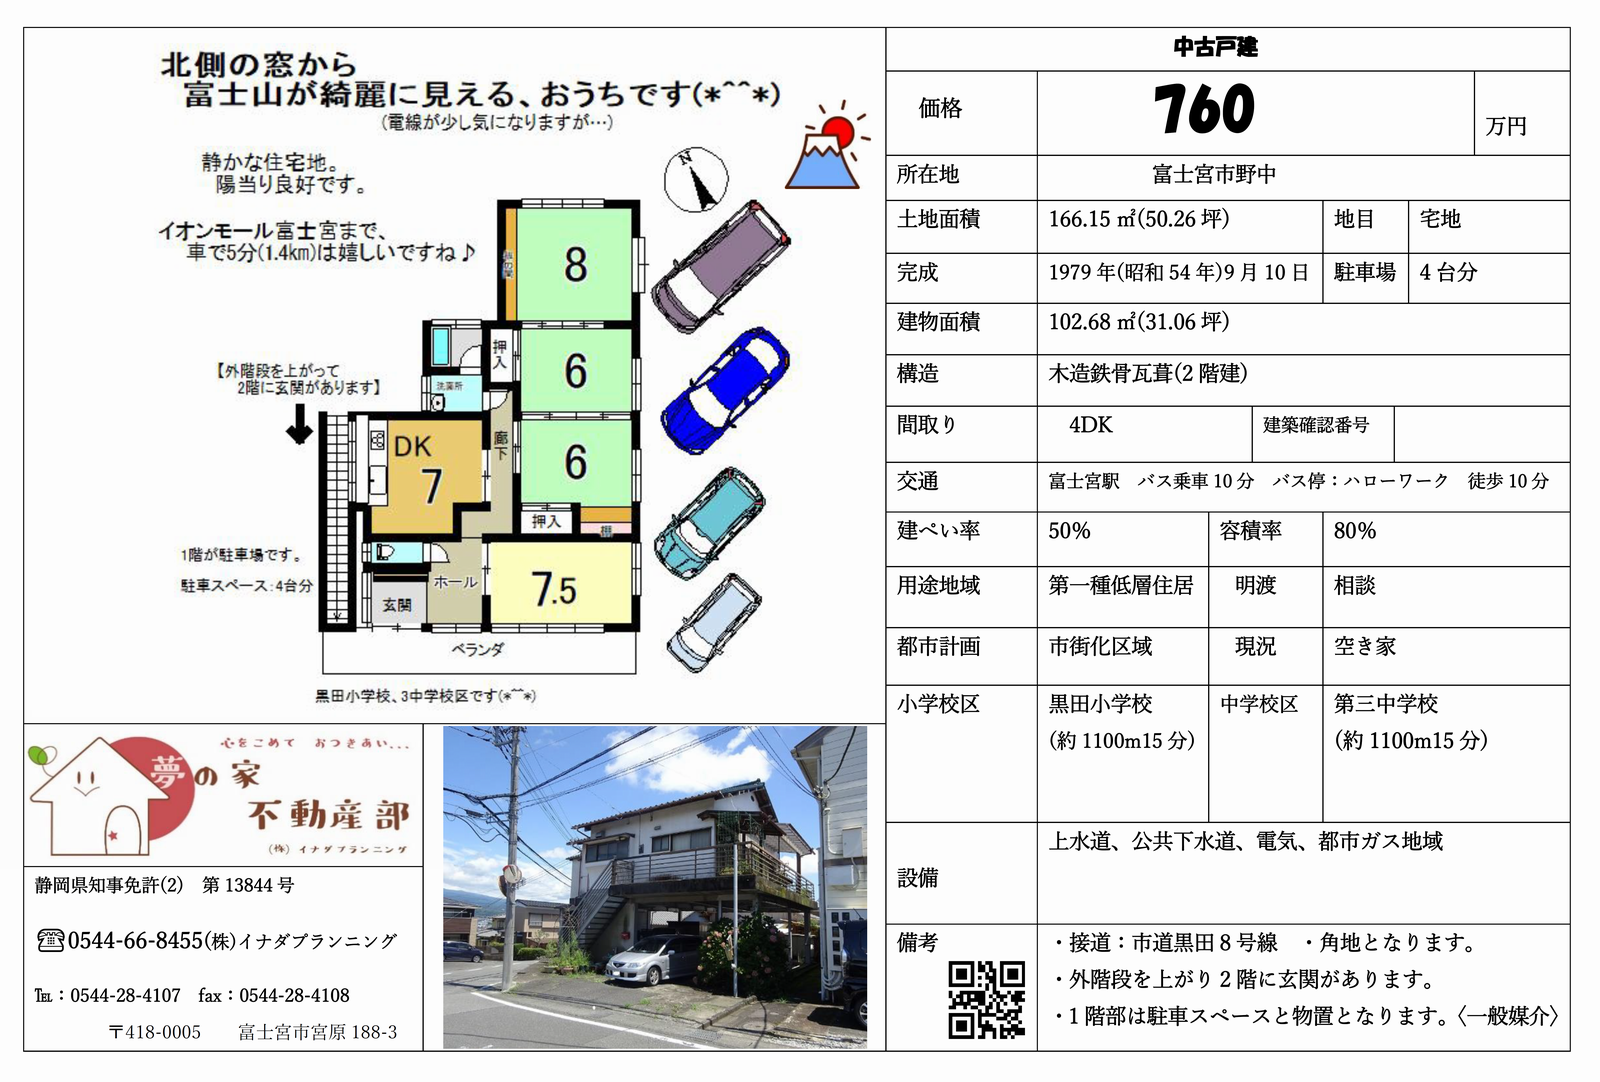 富士宮市野中の中古住宅 4Dk 760万のマイソク画像です。